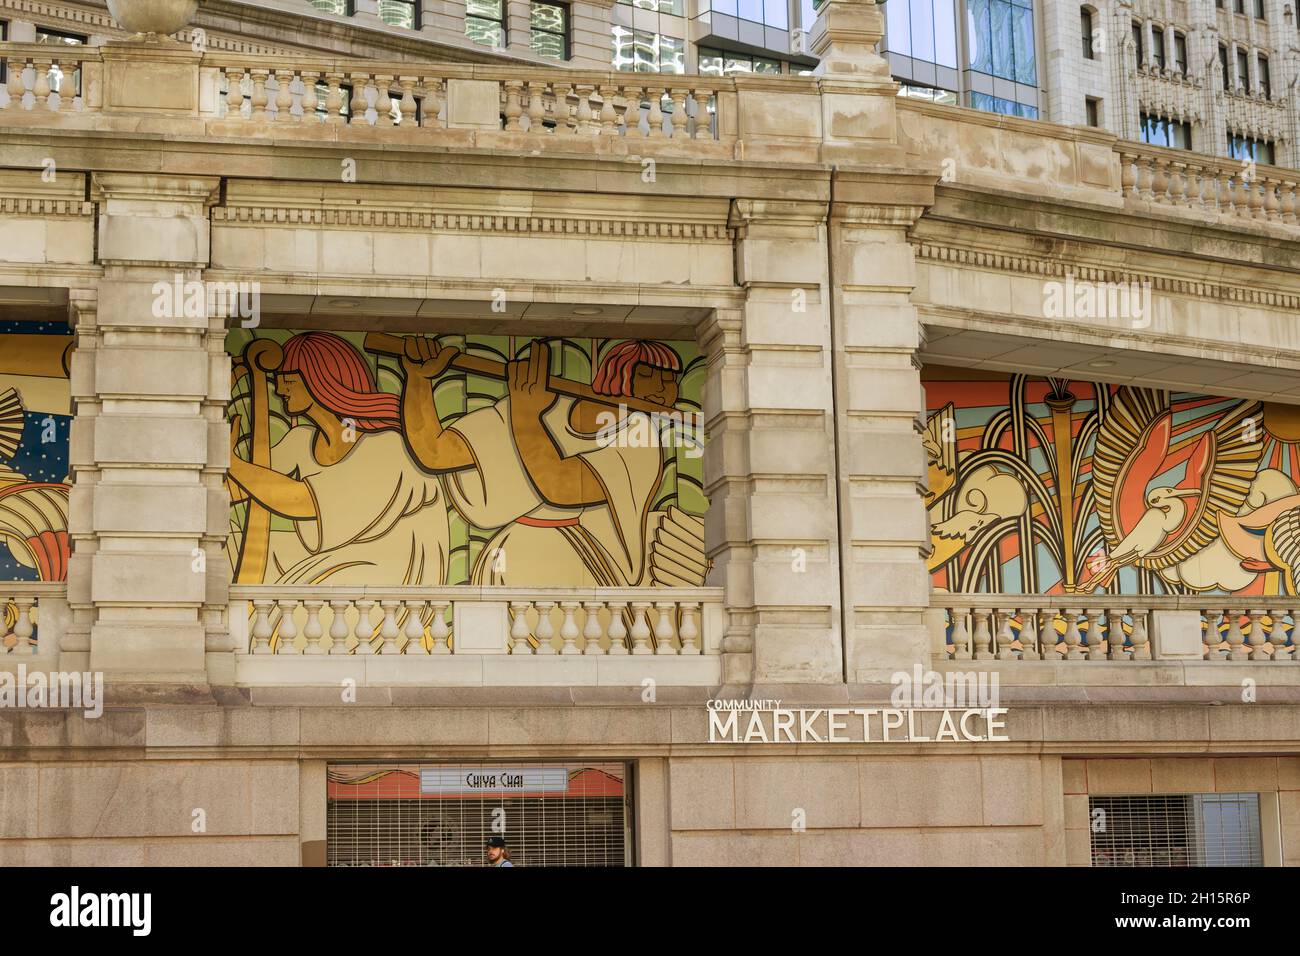 Wandgemälde im Community Marketplace am Chicago Riverwalk in der Innenstadt von Chicago, Illinois Stockfoto